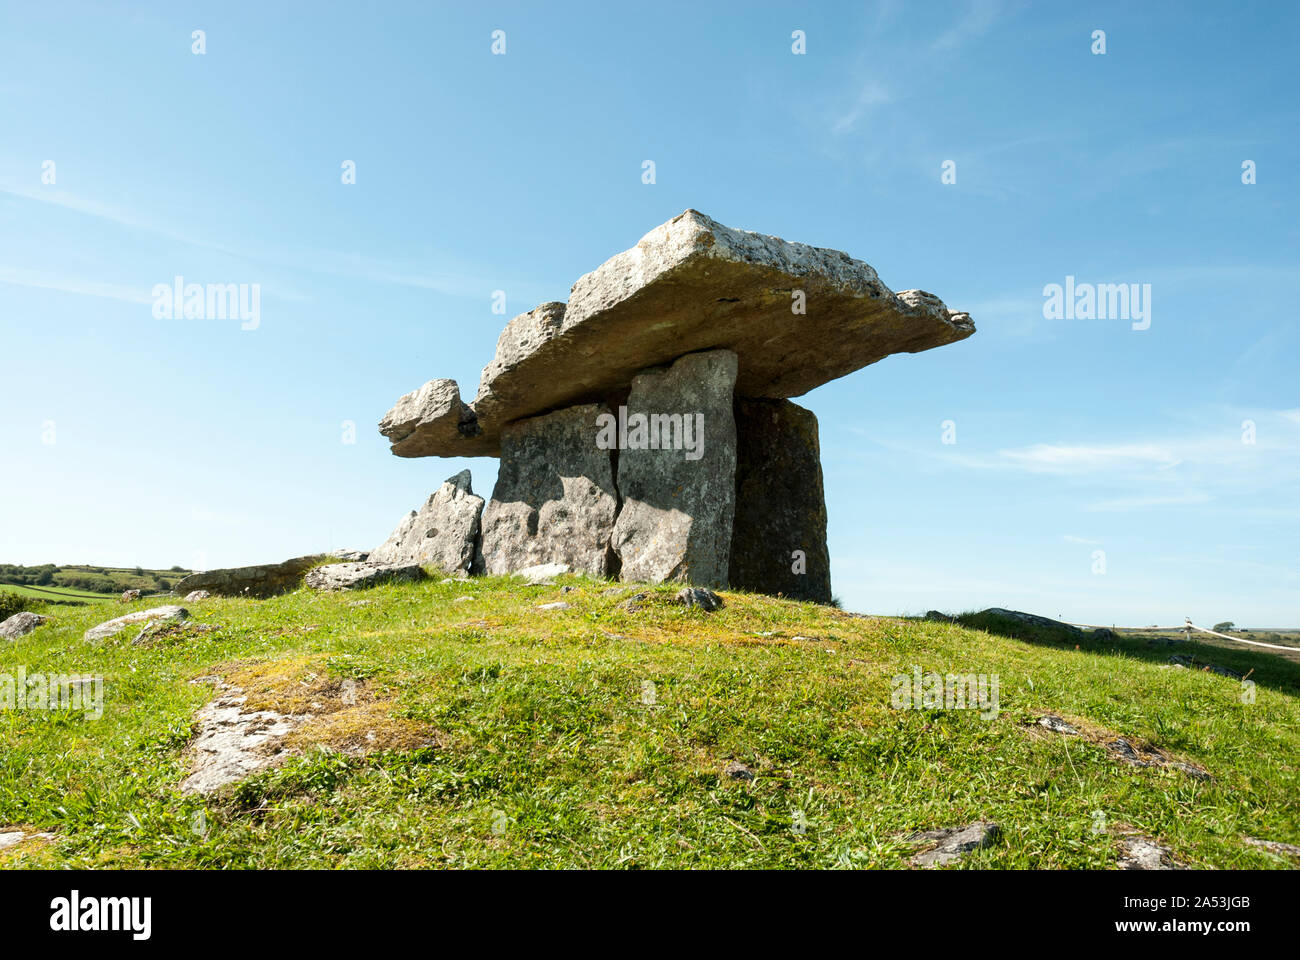 Poulnabrone cairn o tomba del portale è il più antico monumento megalitico in Irlanda. Foto Stock